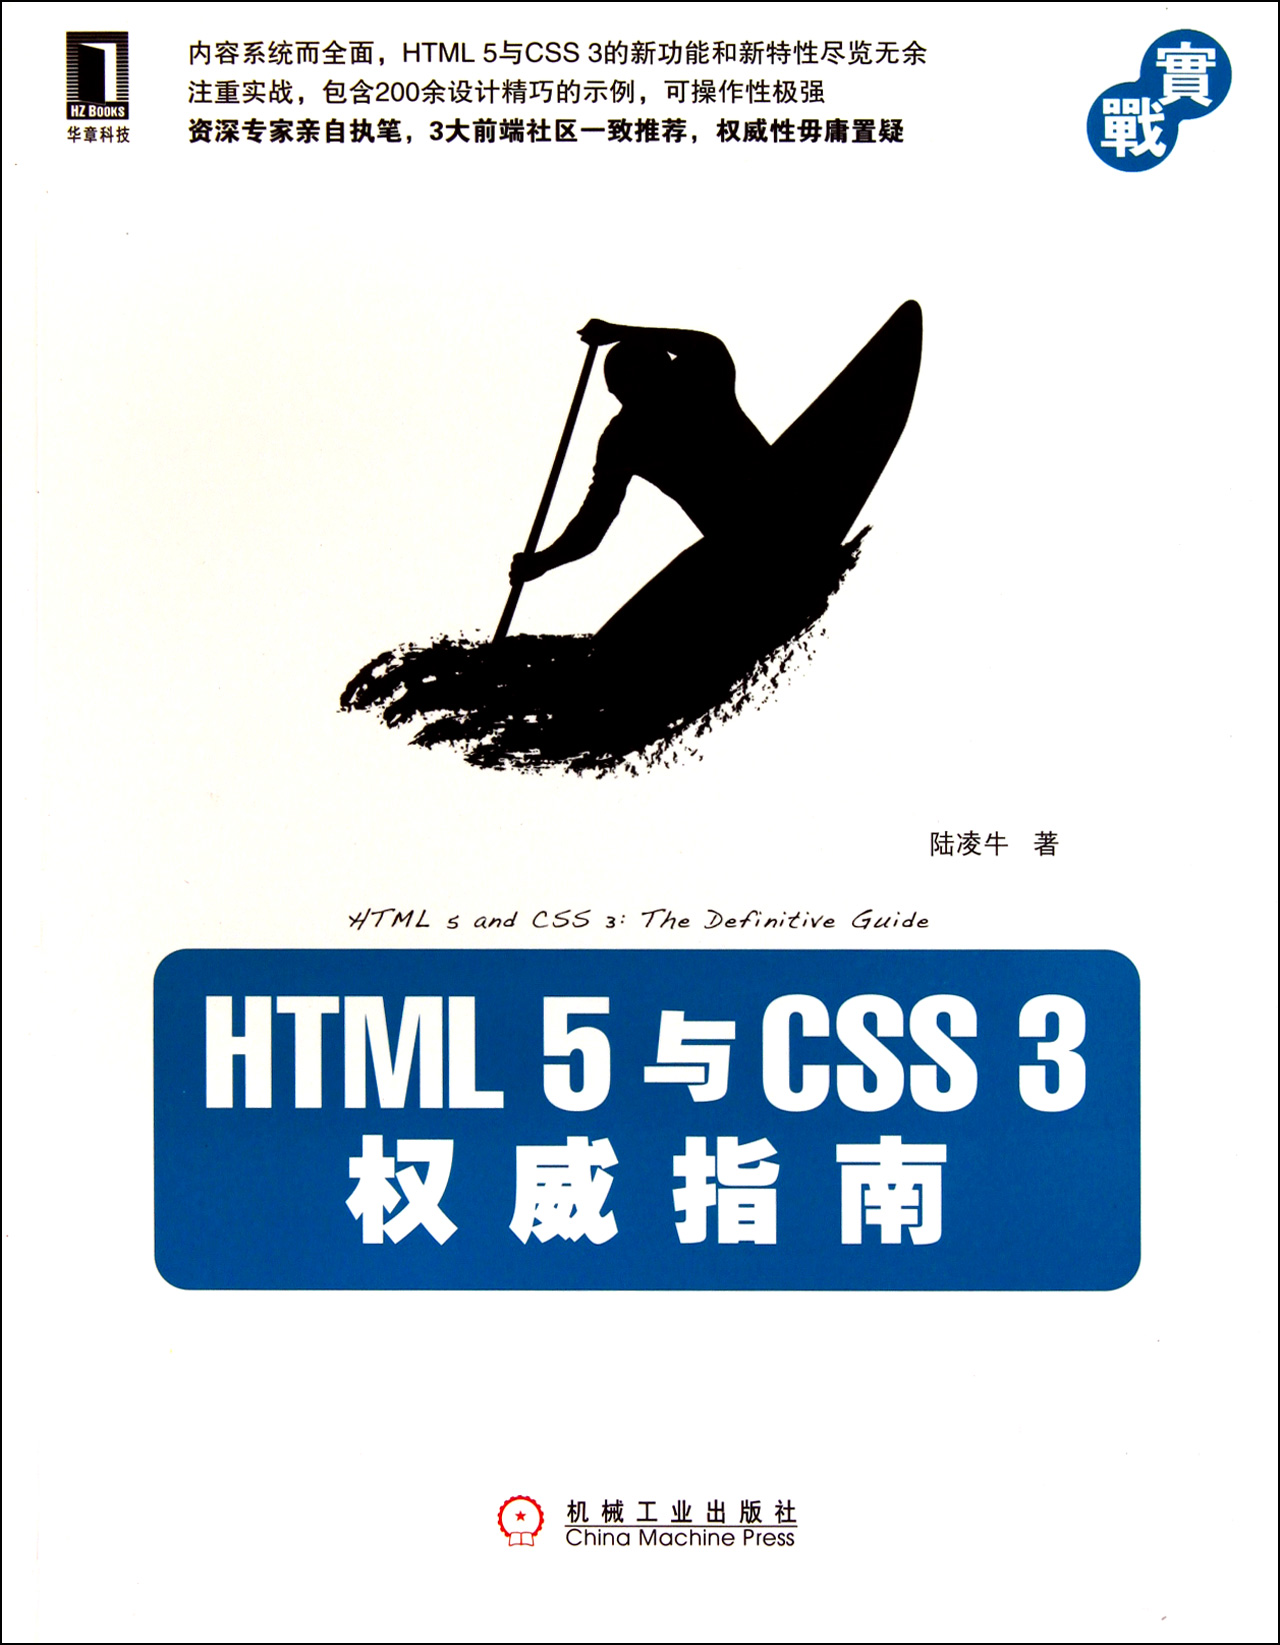 html 5与css 3权威指南 免费下载地址分享